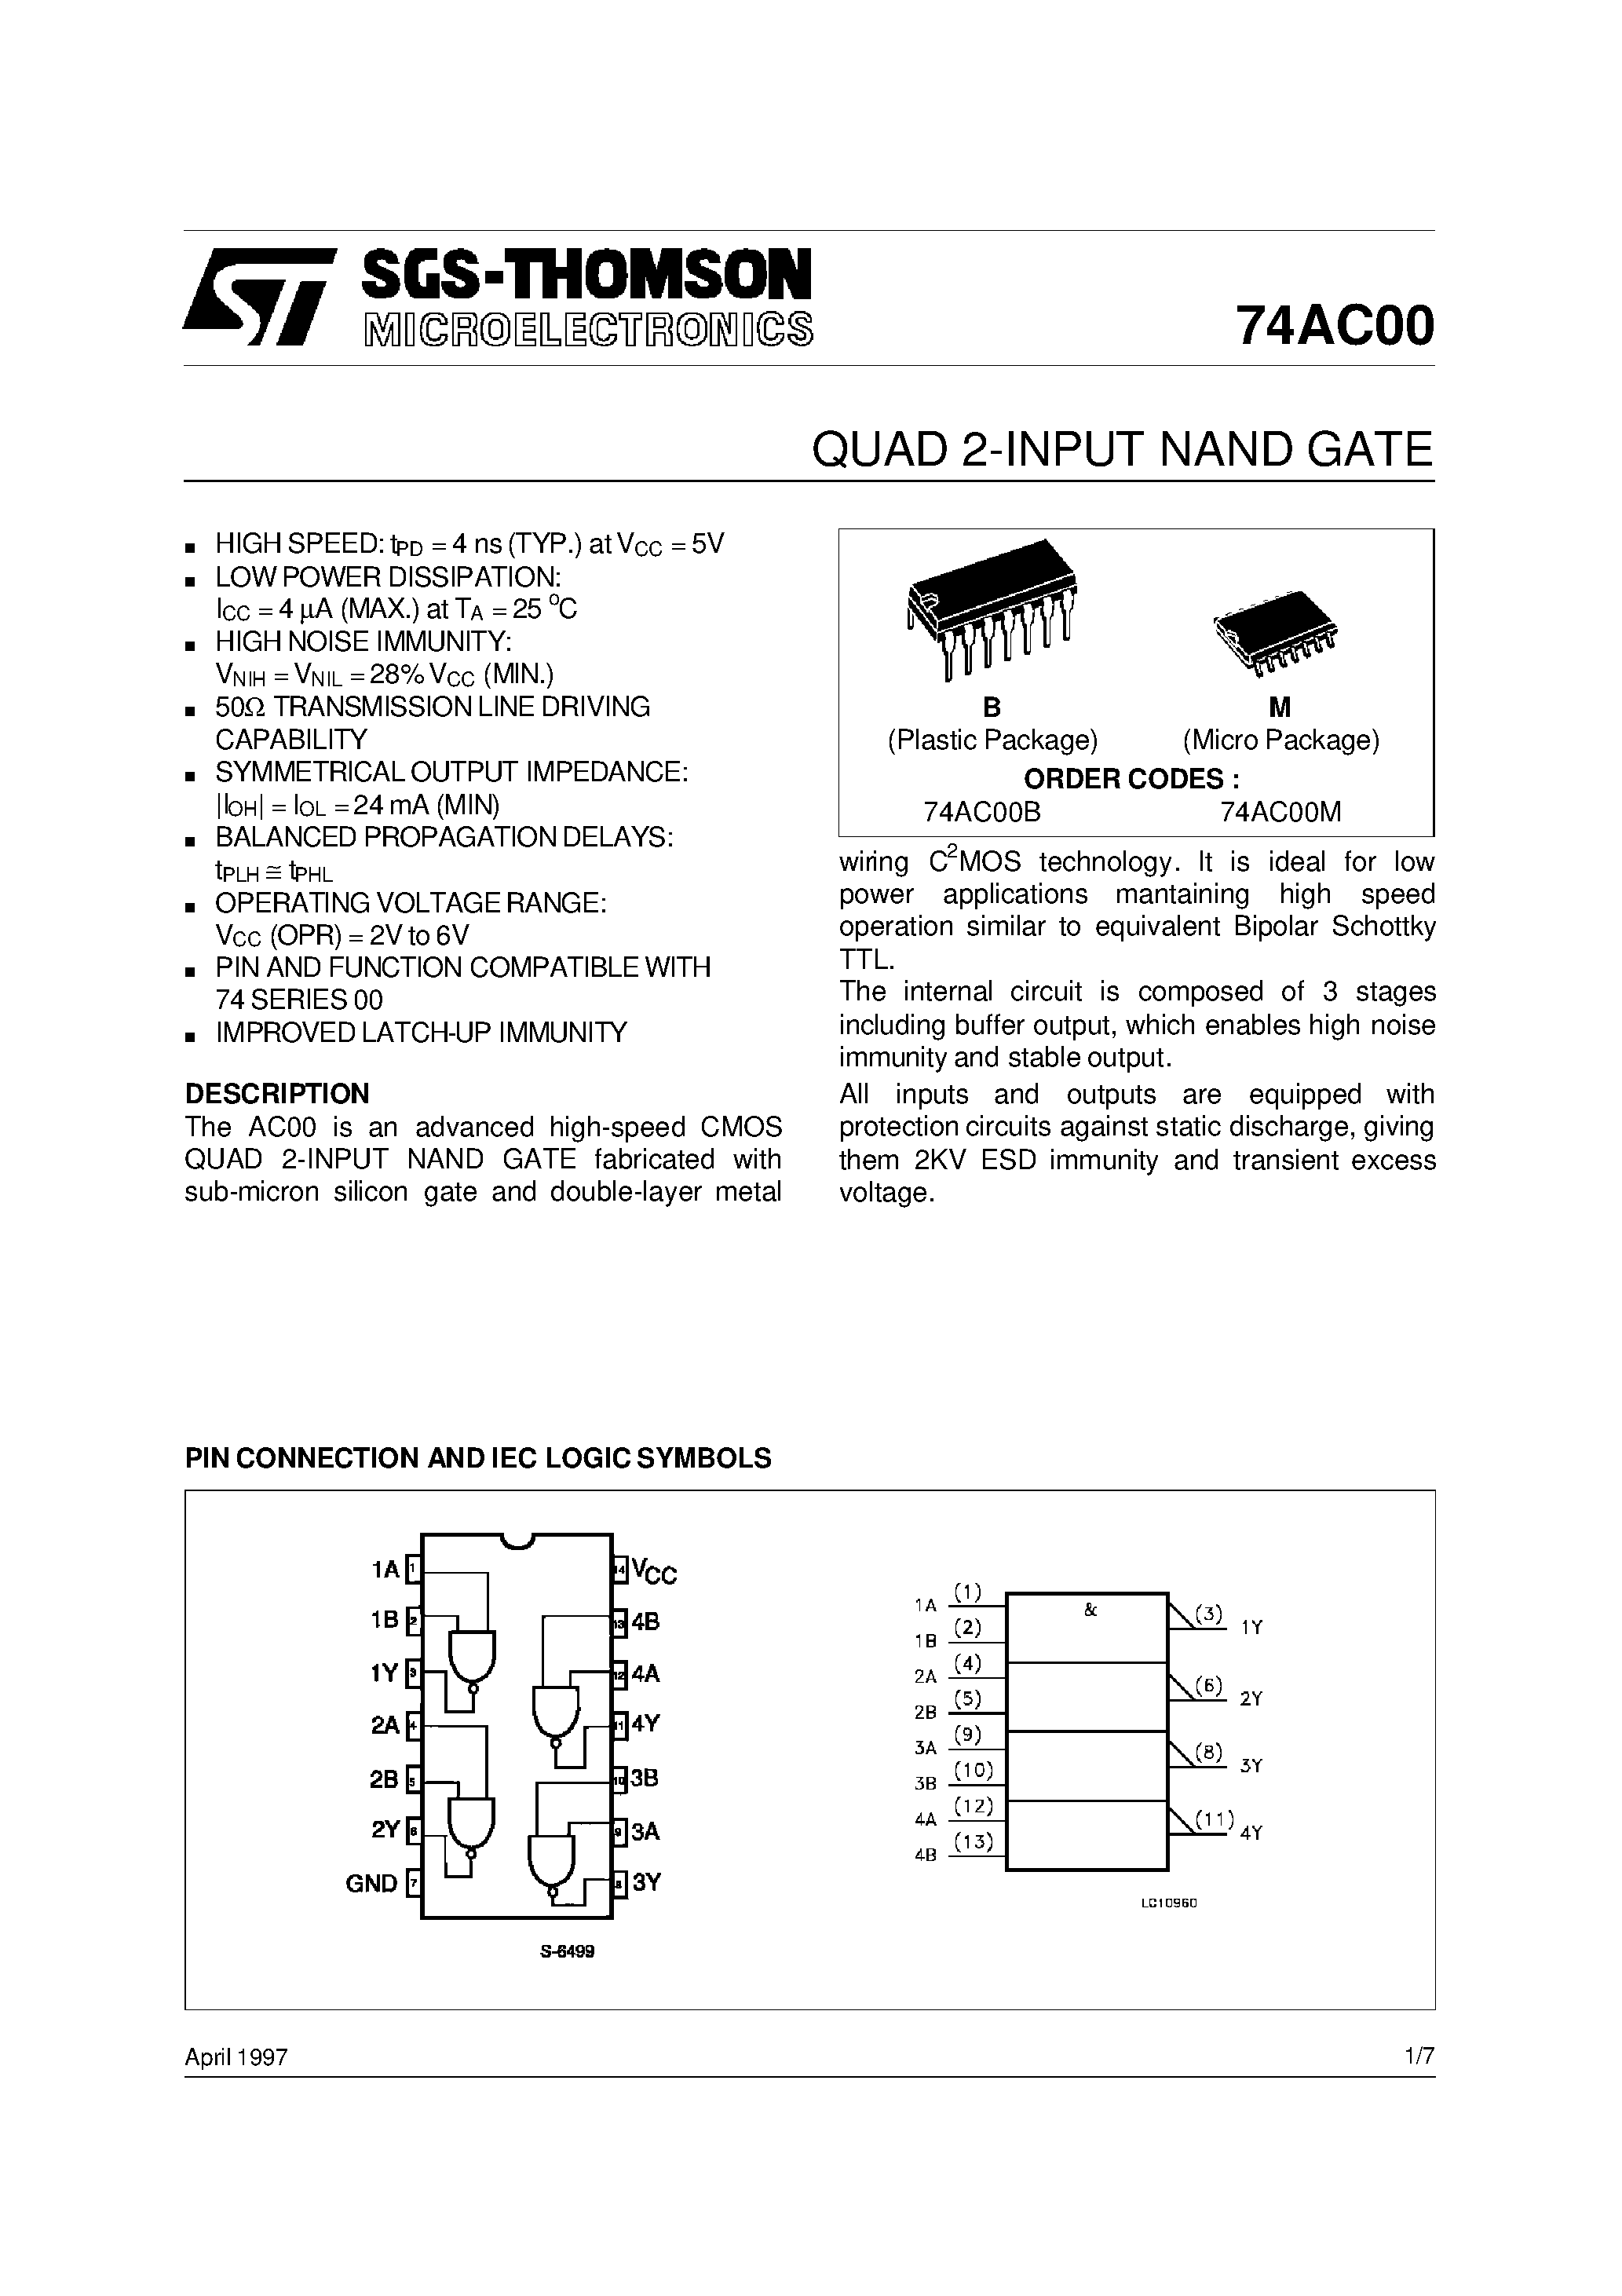 Даташит 74AC00M - QUAD 2-INPUT NAND GATE страница 1